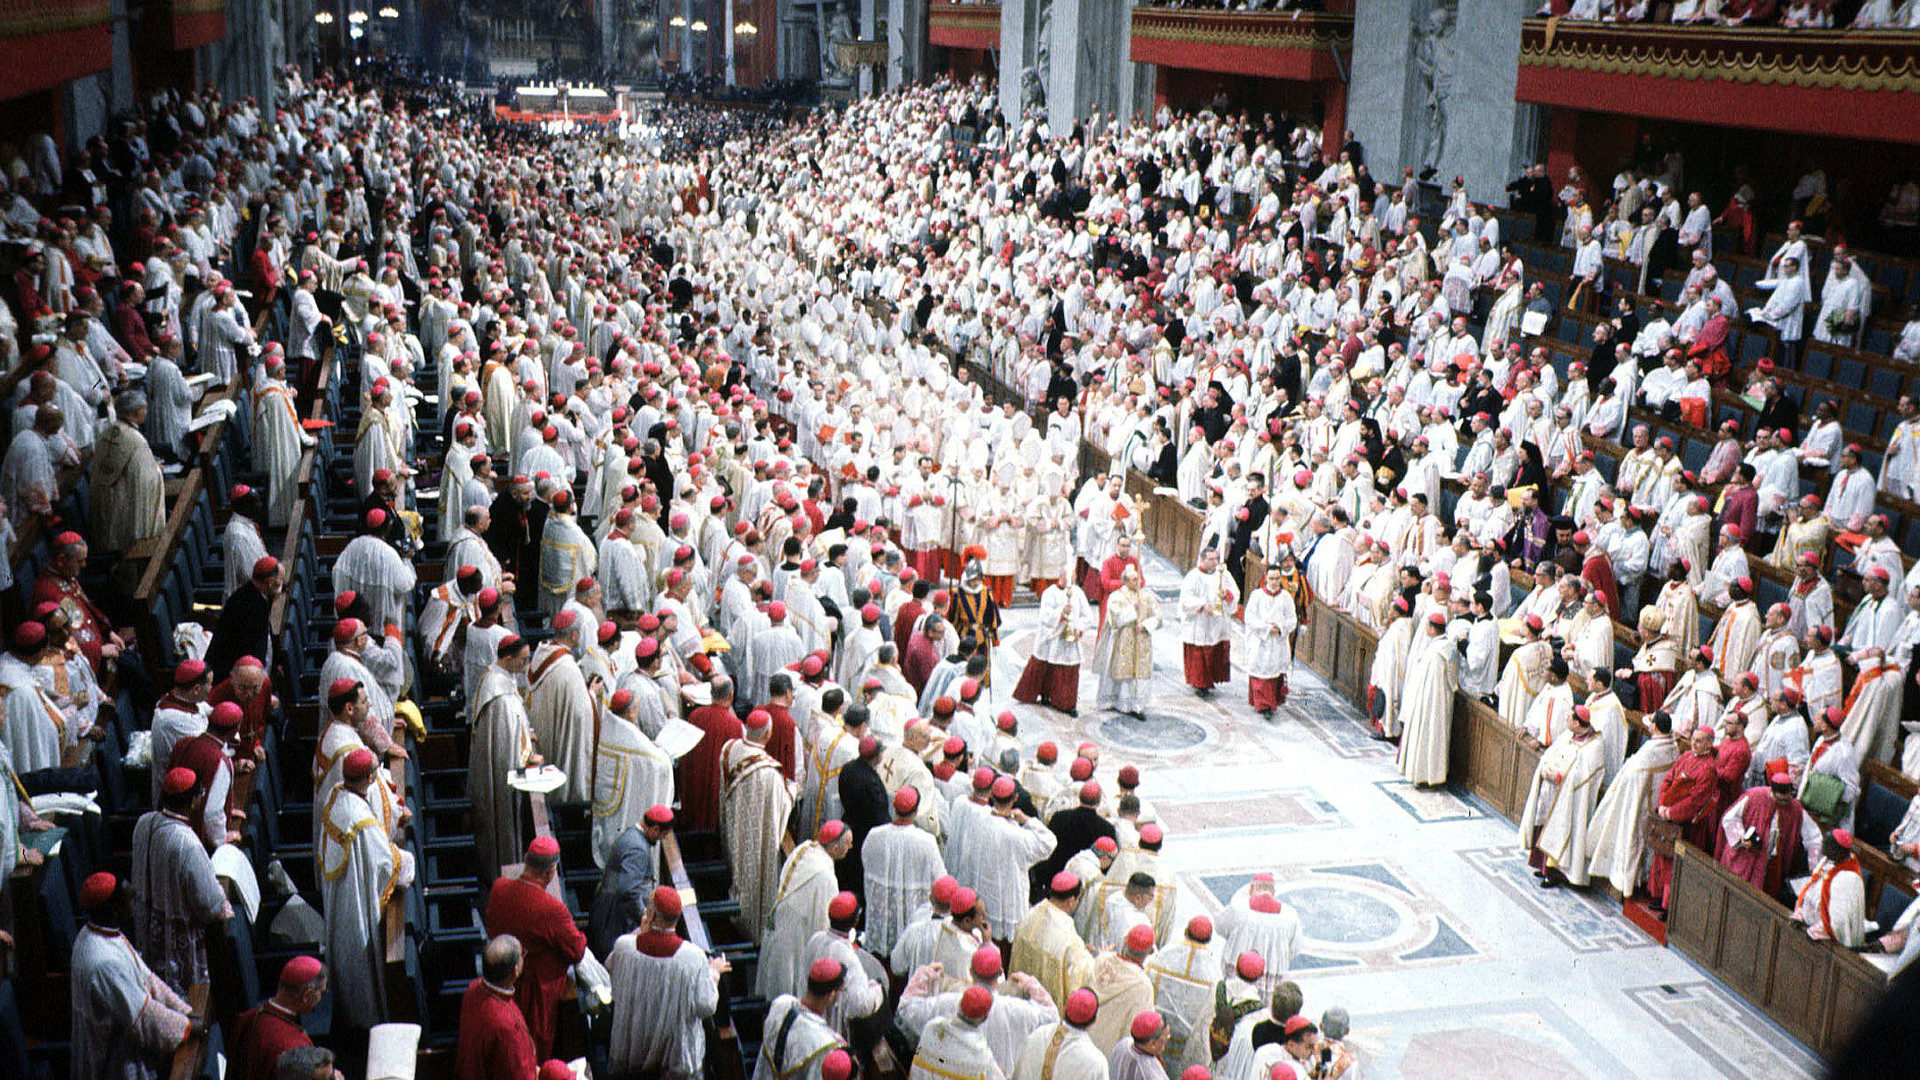 Zweites Vatikanisches Konzil (1962-65)